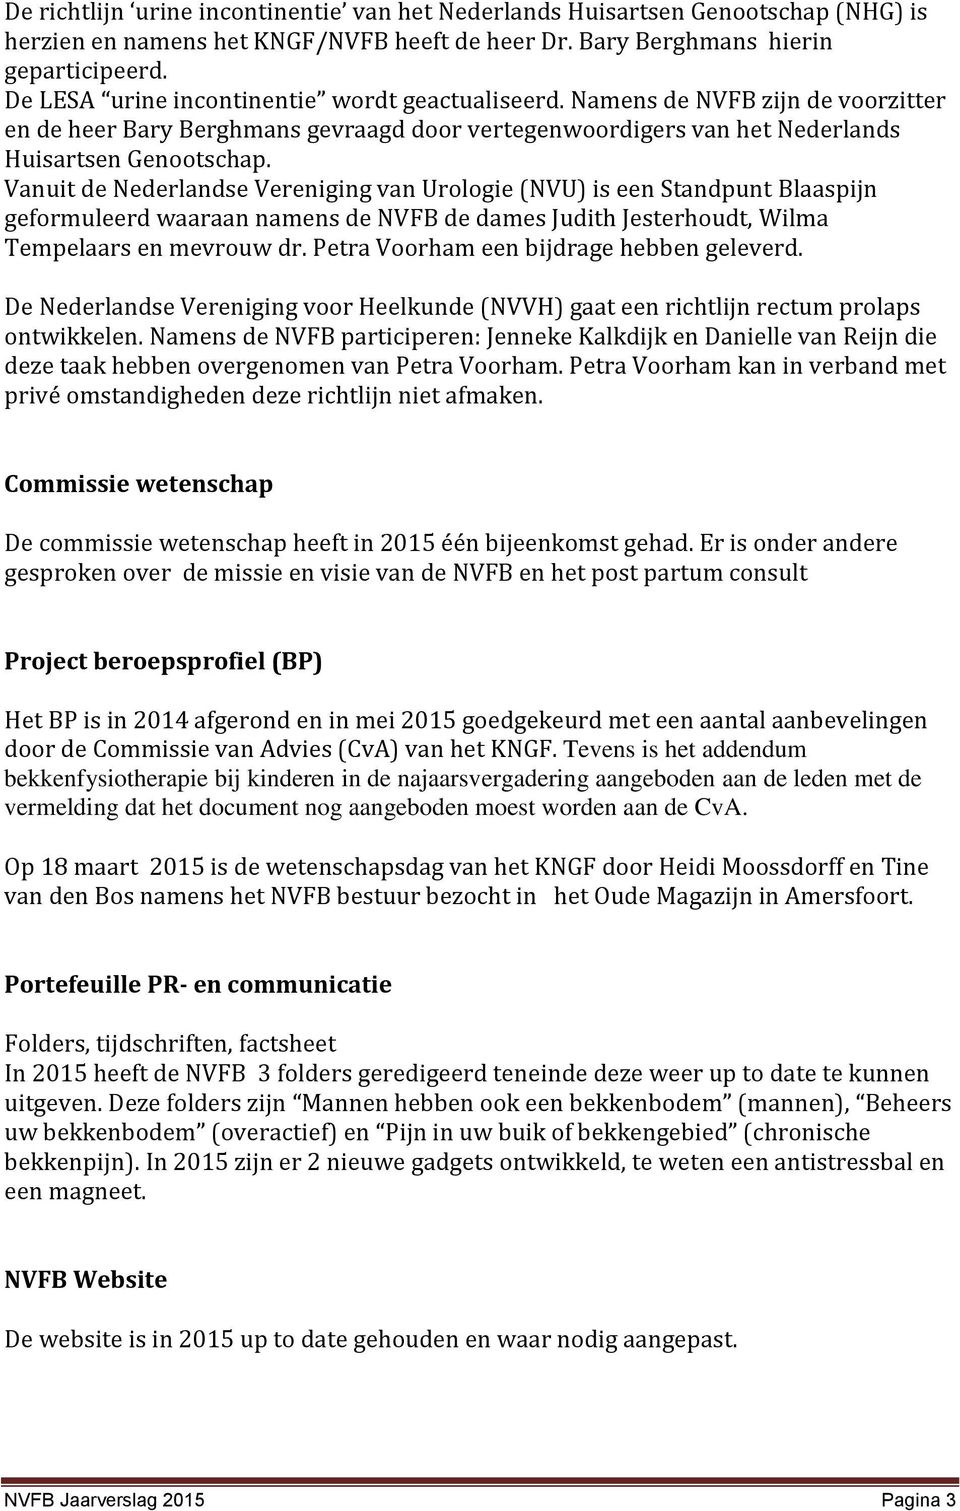 Vanuit de Nederlandse Vereniging van Urologie (NVU) is een Standpunt Blaaspijn geformuleerd waaraan namens de NVFB de dames Judith Jesterhoudt, Wilma Tempelaars en mevrouw dr.